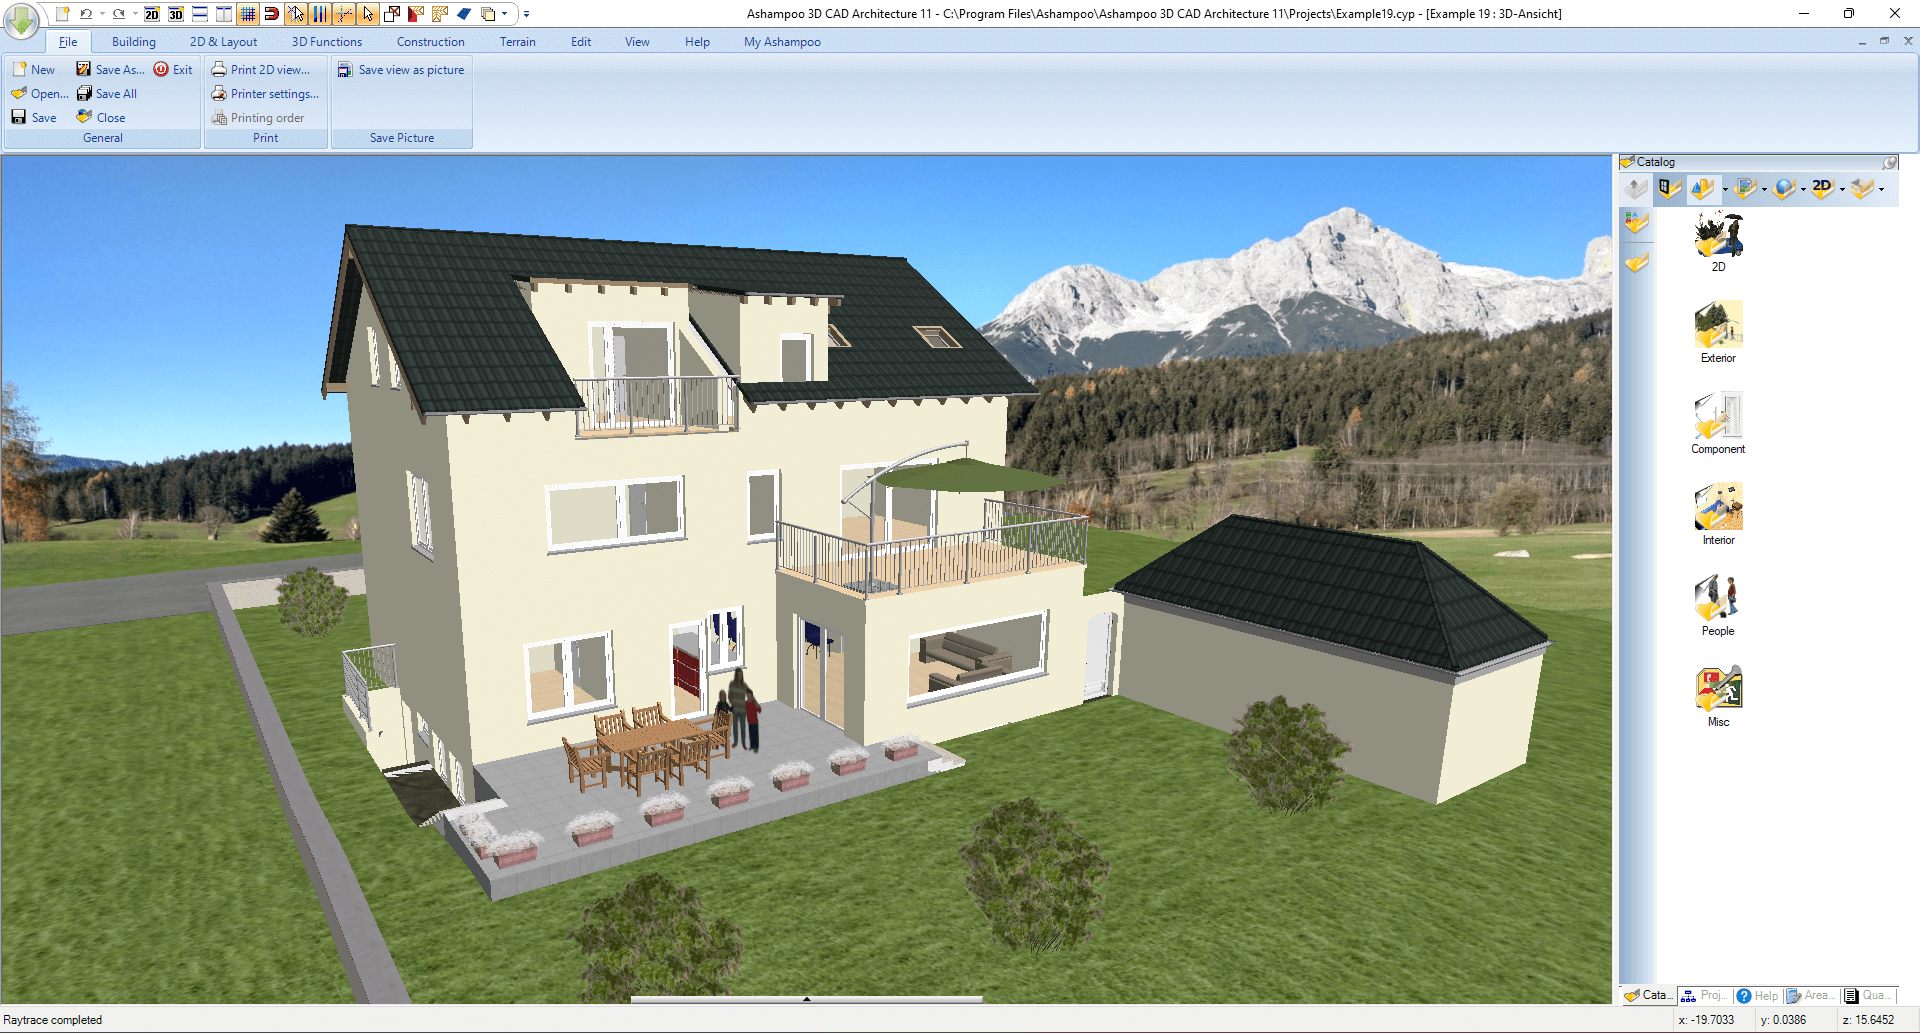 Ashampoo 3D CAD Architecture 11 - House 